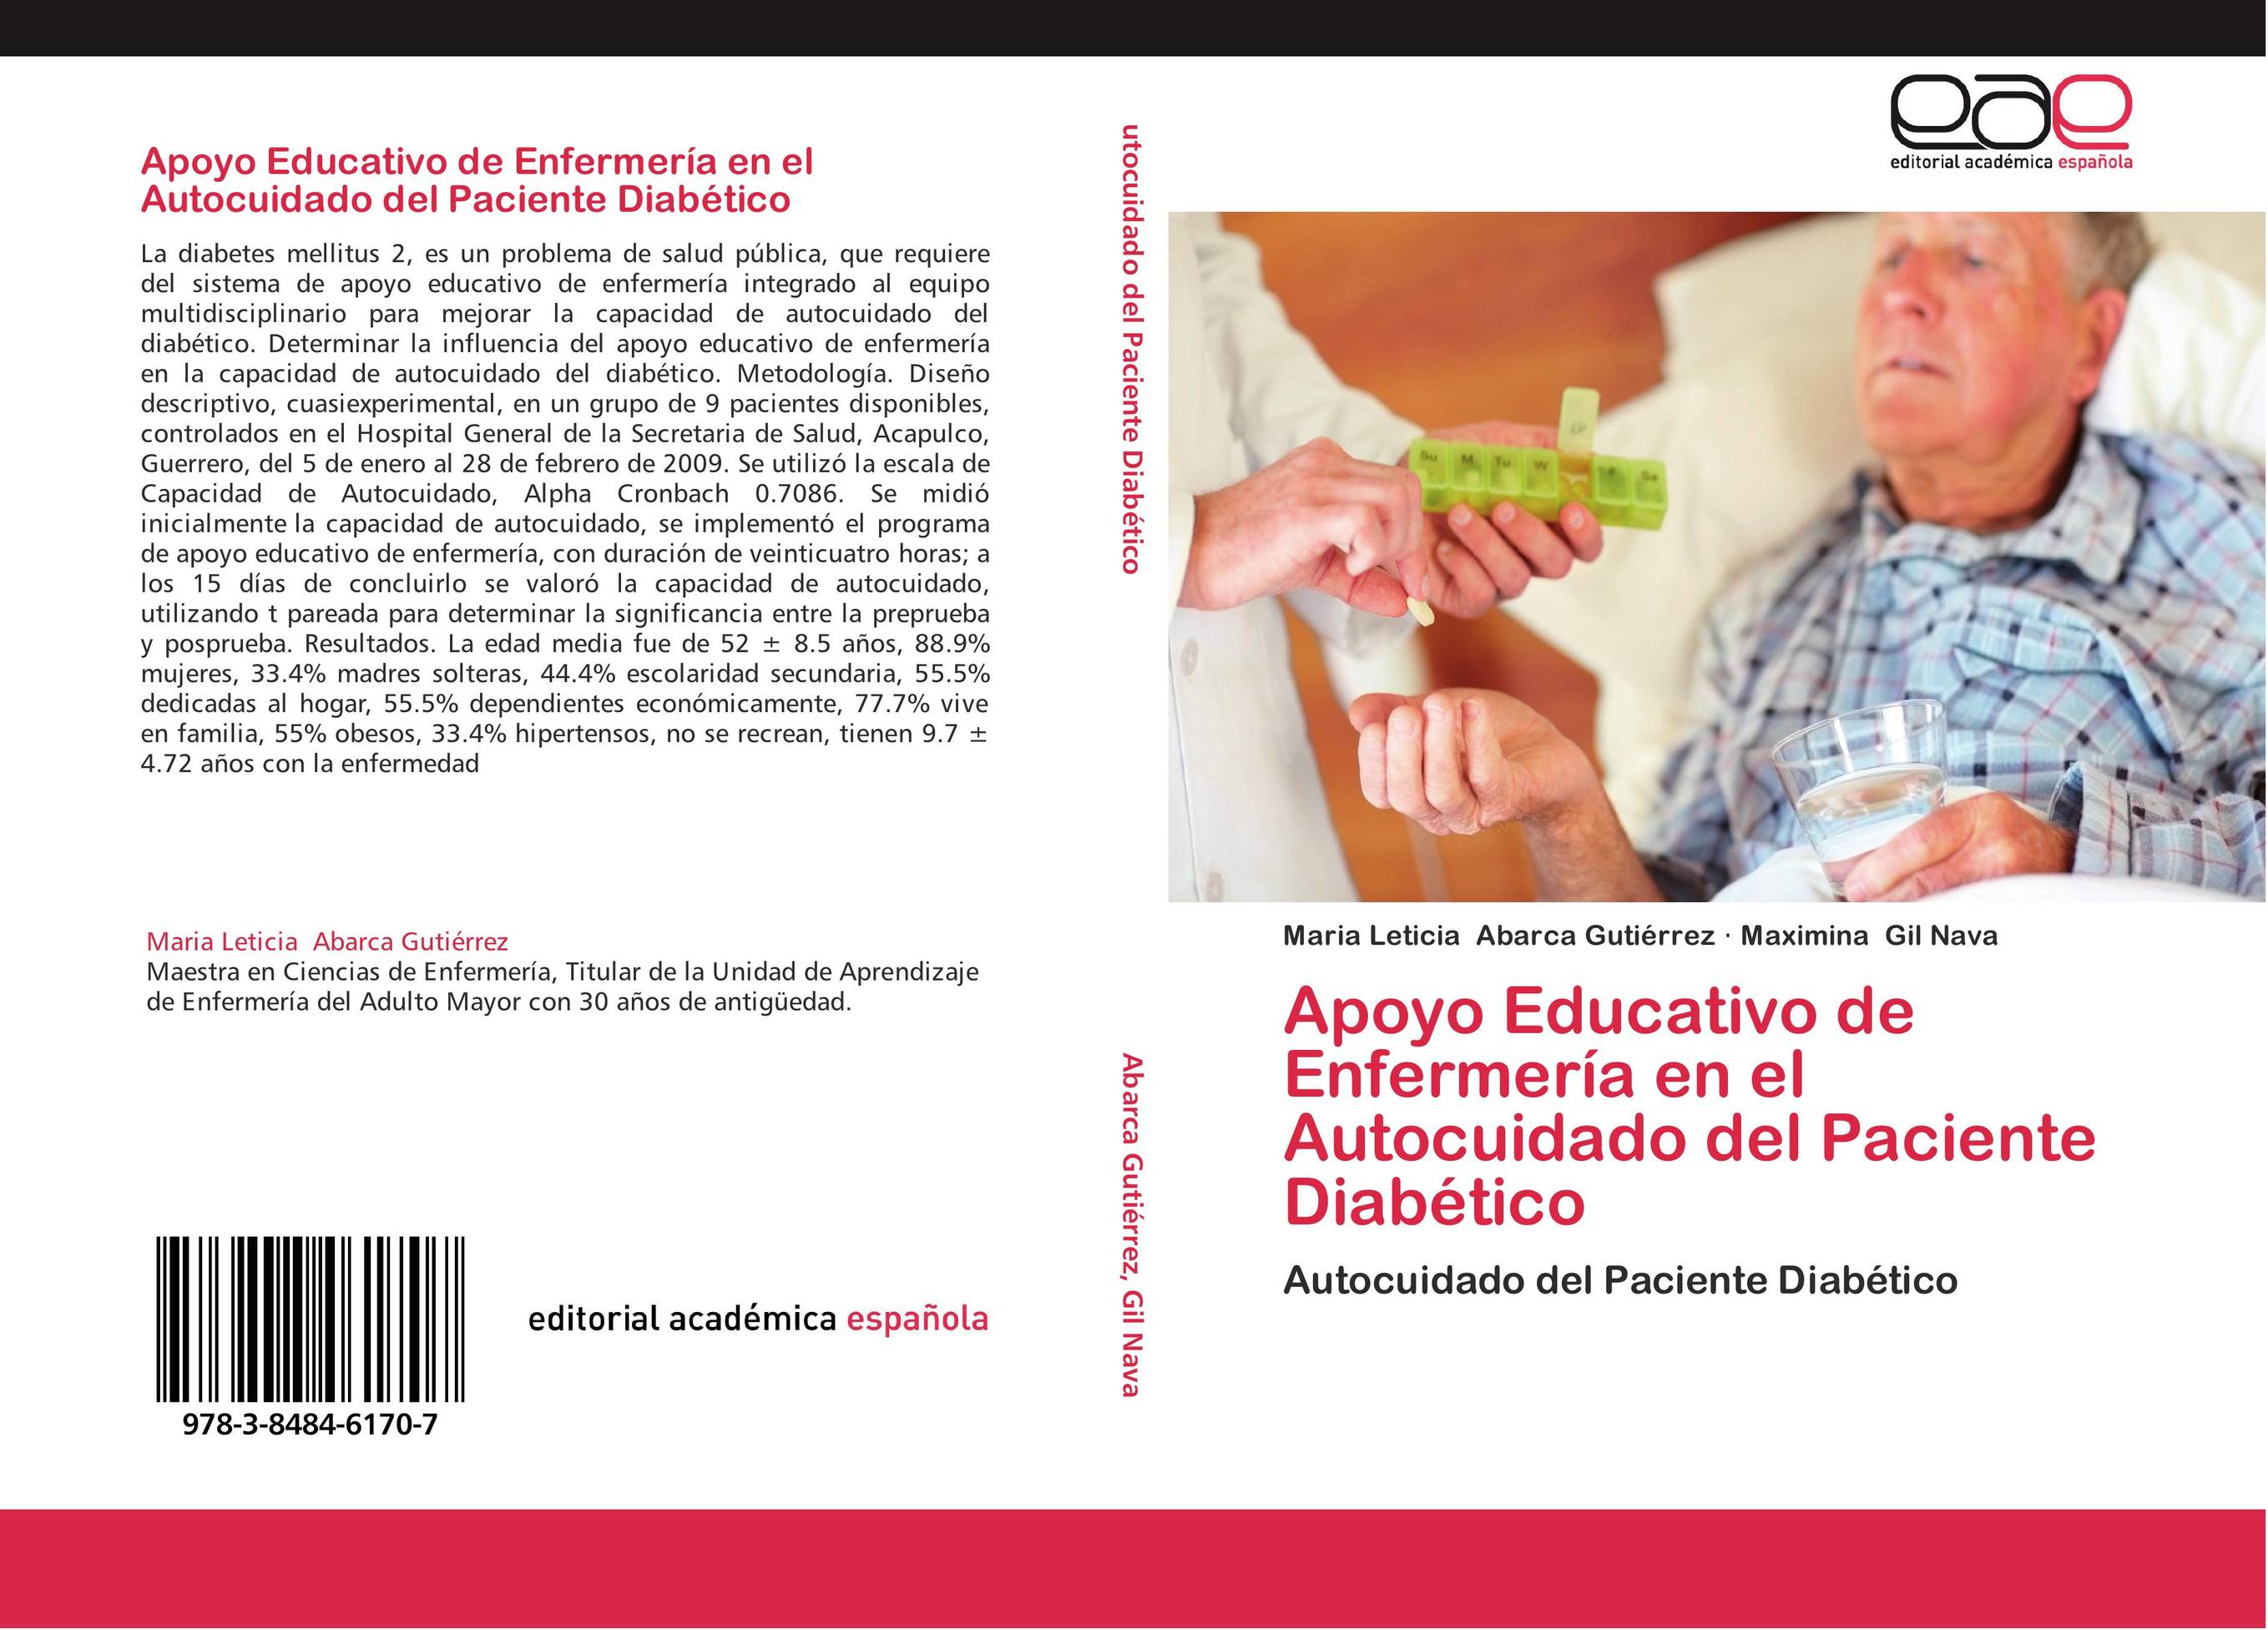 Apoyo Educativo de Enfermería en el Autocuidado del Paciente Diabético